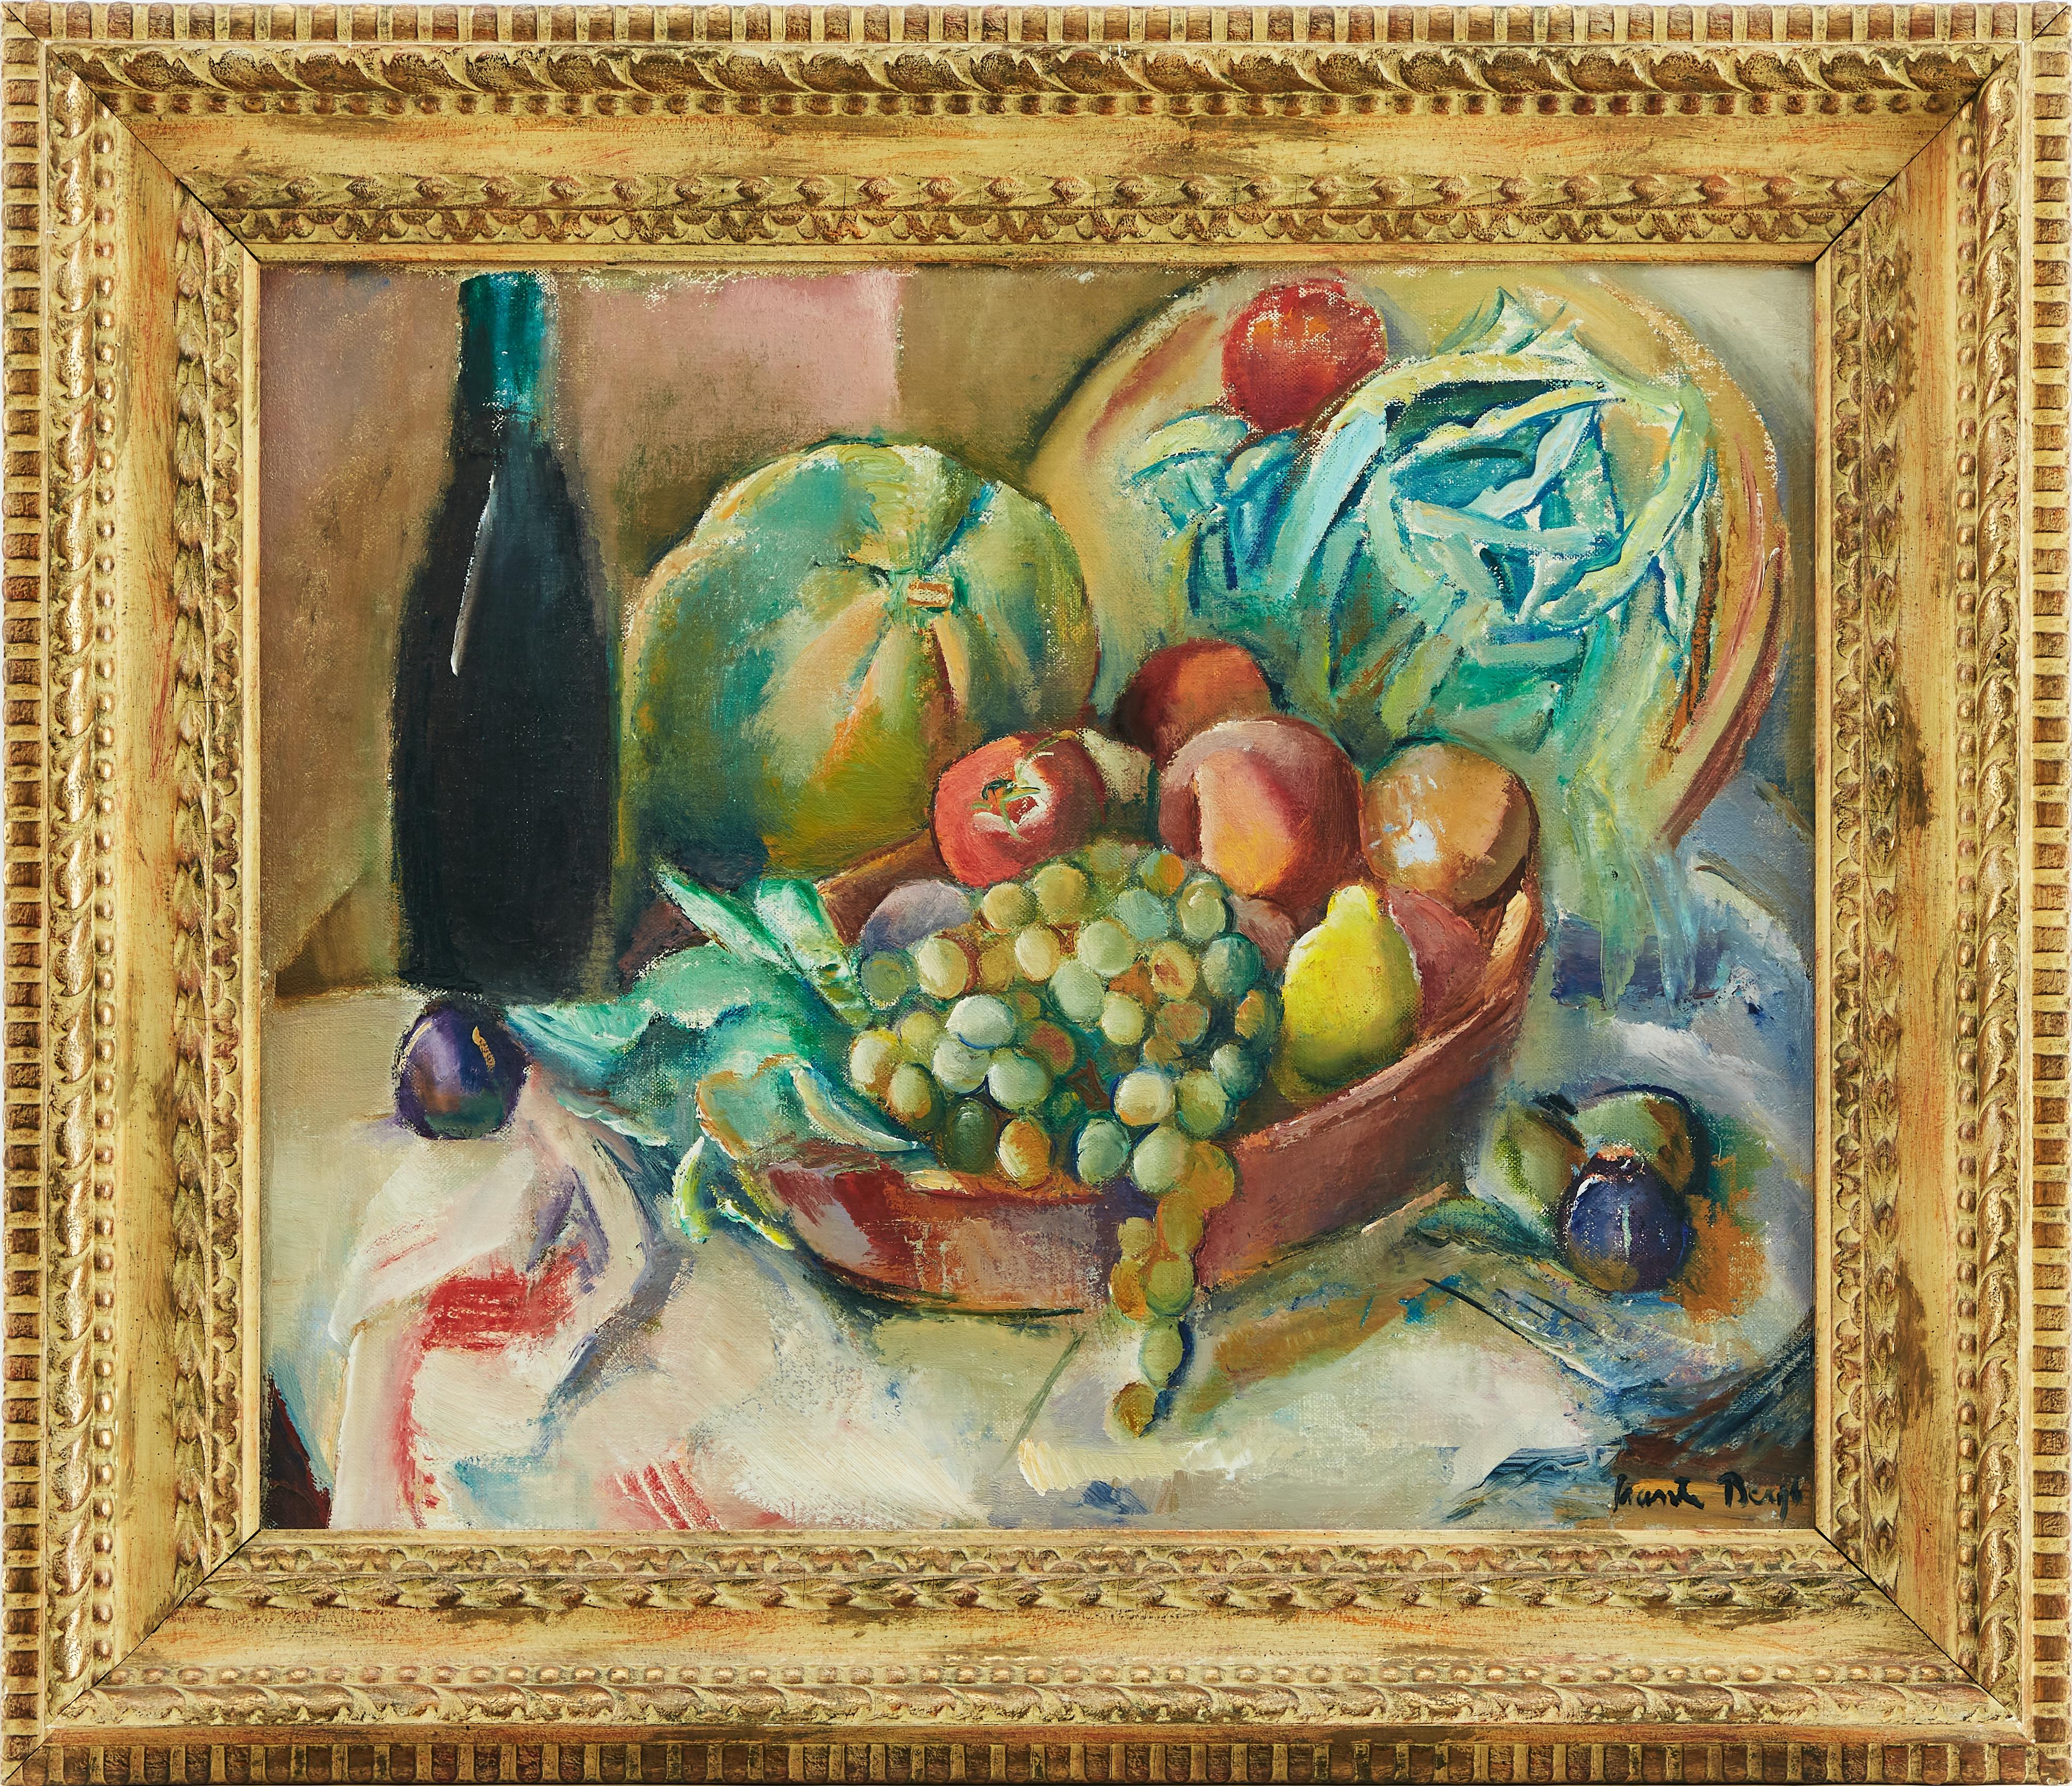 Ein schönes Stillleben mit Früchten in einem Korb auf einem Tisch von Ewald Svante Bergh, (1885-1946). Öl auf Leinwand. Bergh war ein schwedischer Maler und Mitglied der Künstlergruppe "De tolv".
Im Alter von 14 Jahren, 1899, begann er mit